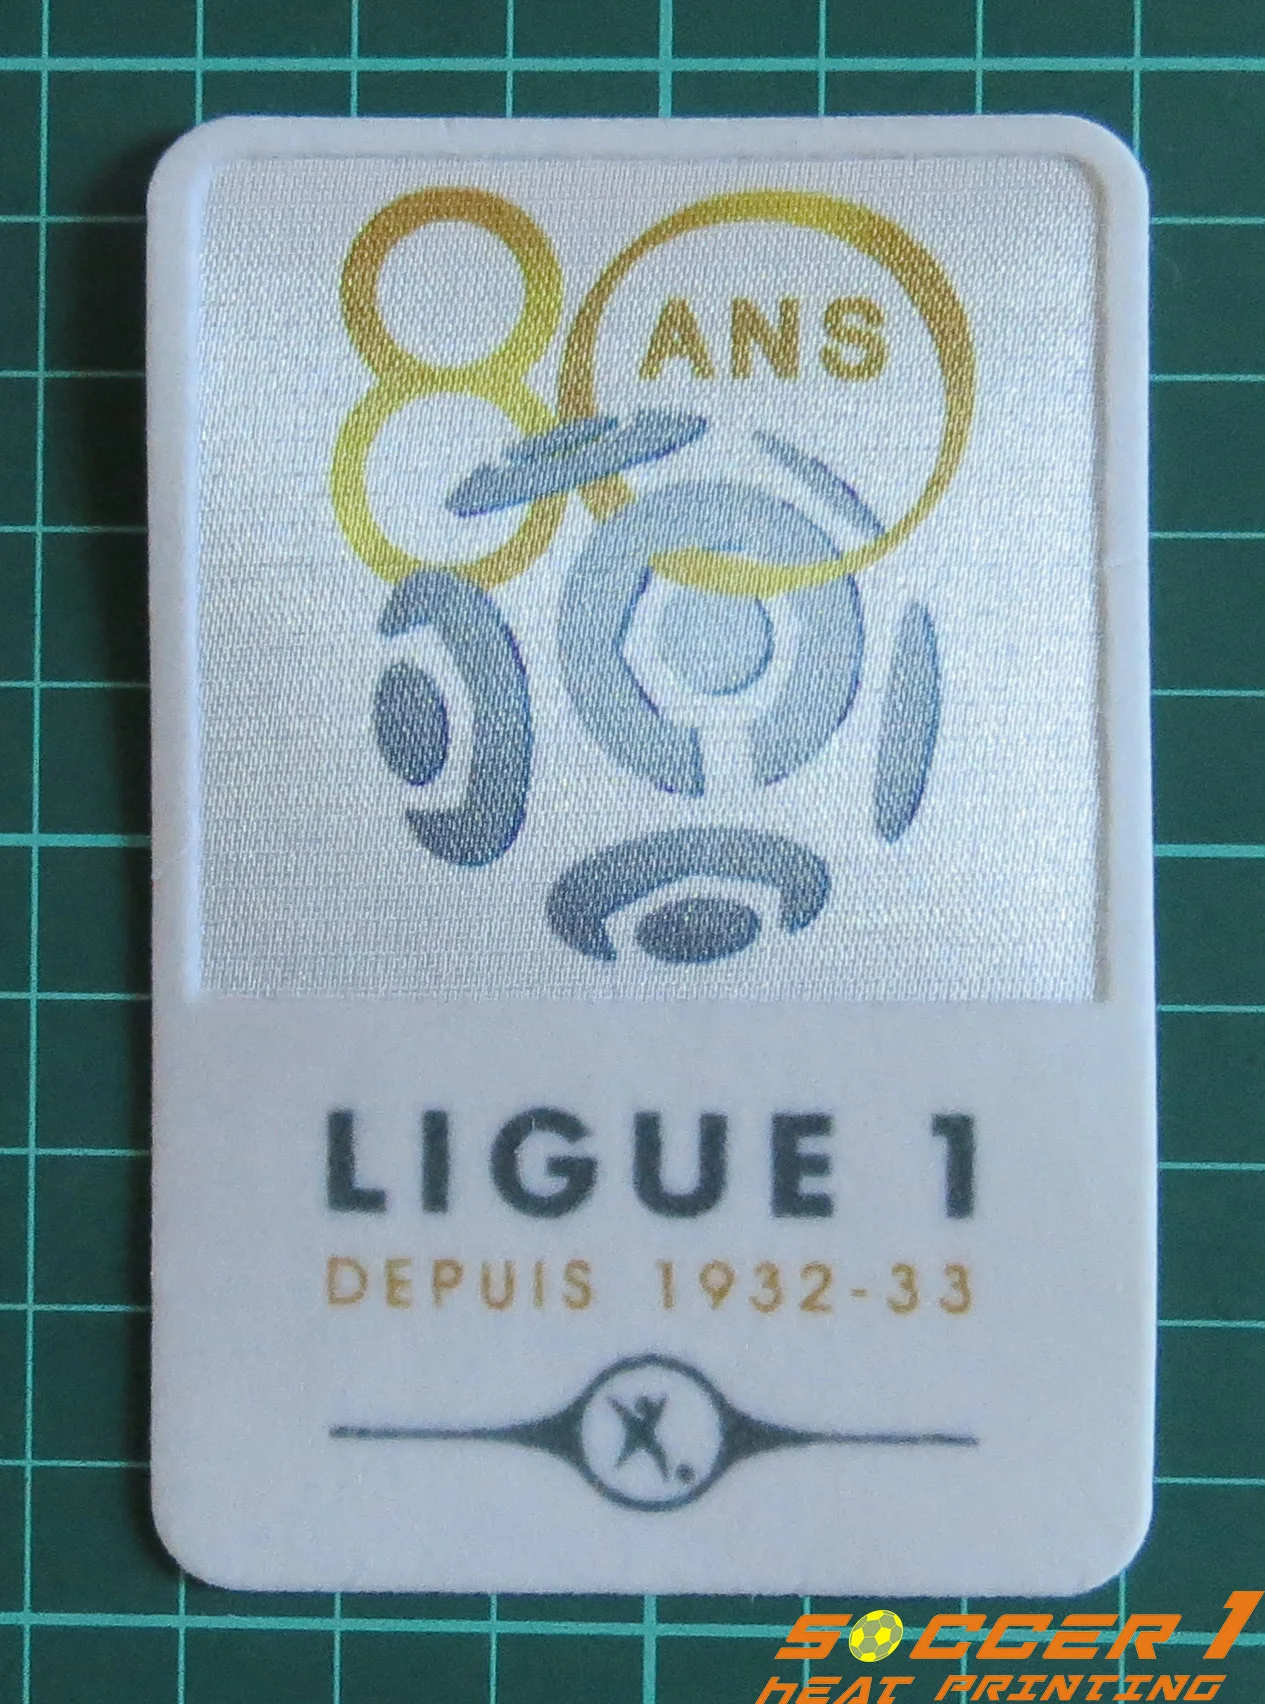 France Patch Badge LFP Ligue 1 80 ans maillot de foot OM PSG OL Monaco 12/13 